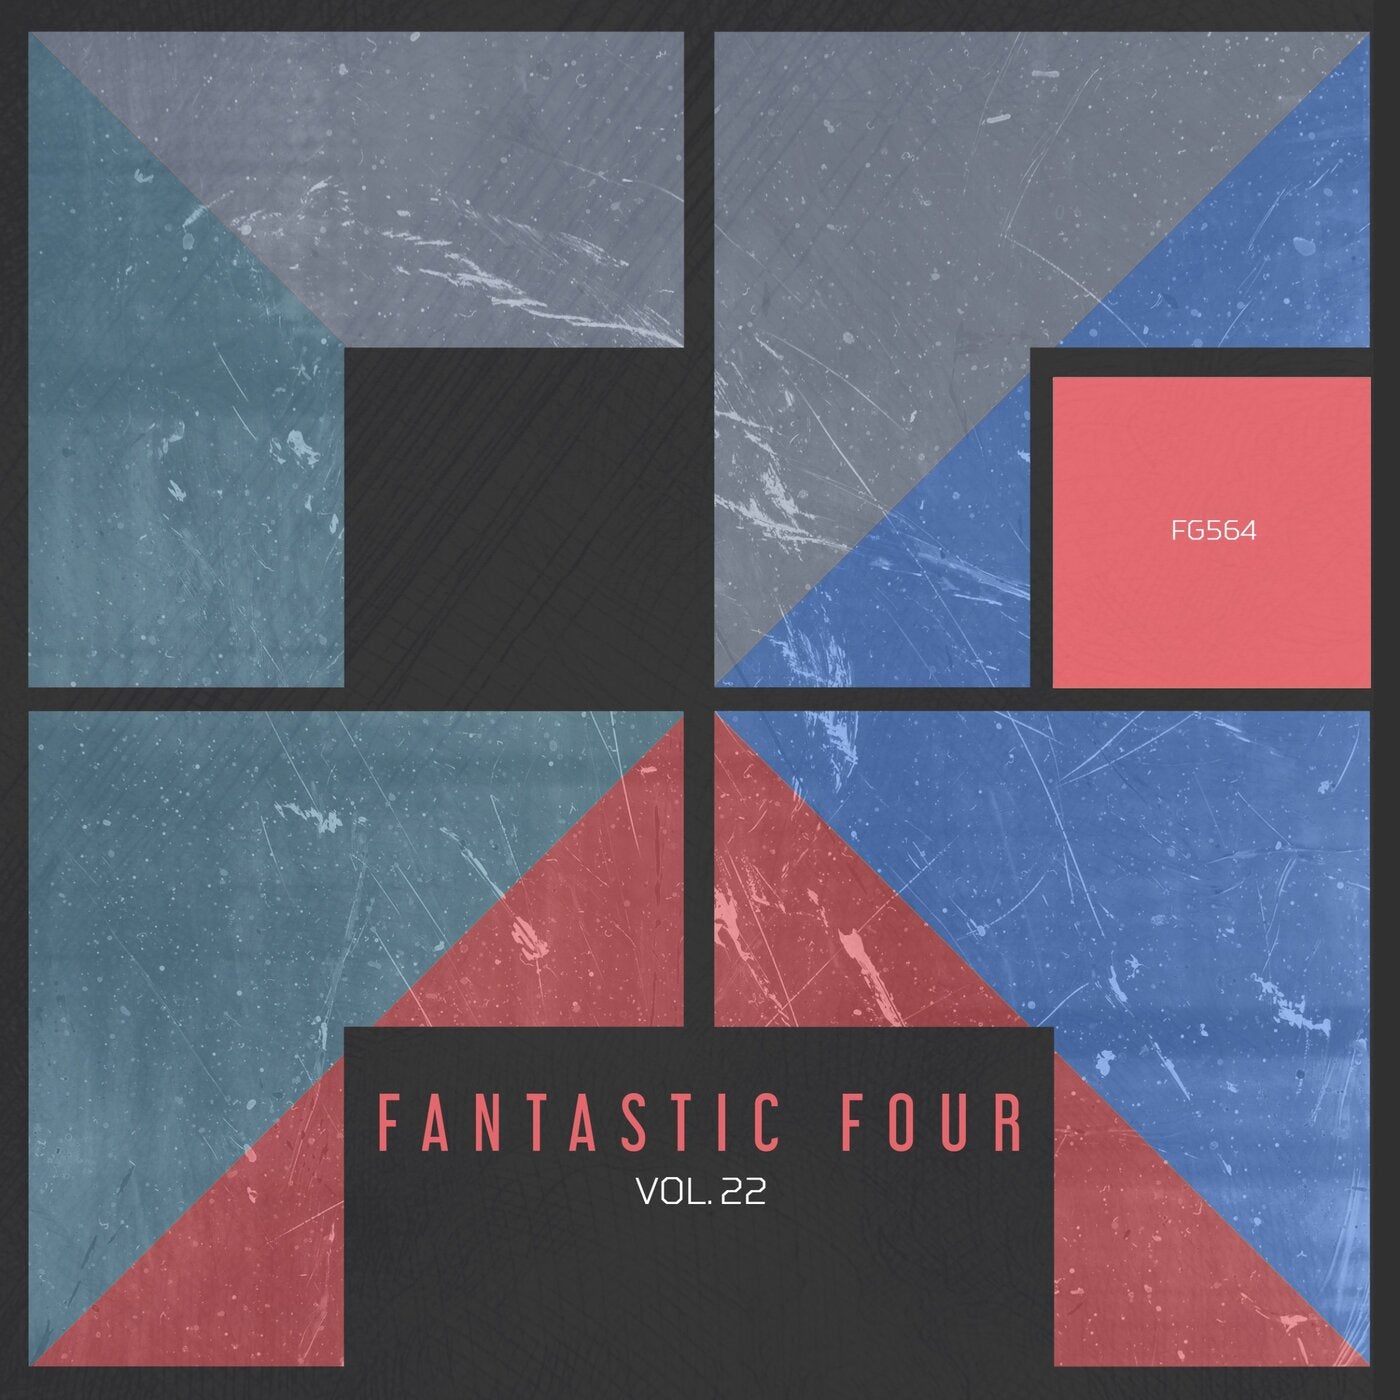 Fantastic Four vol. 22